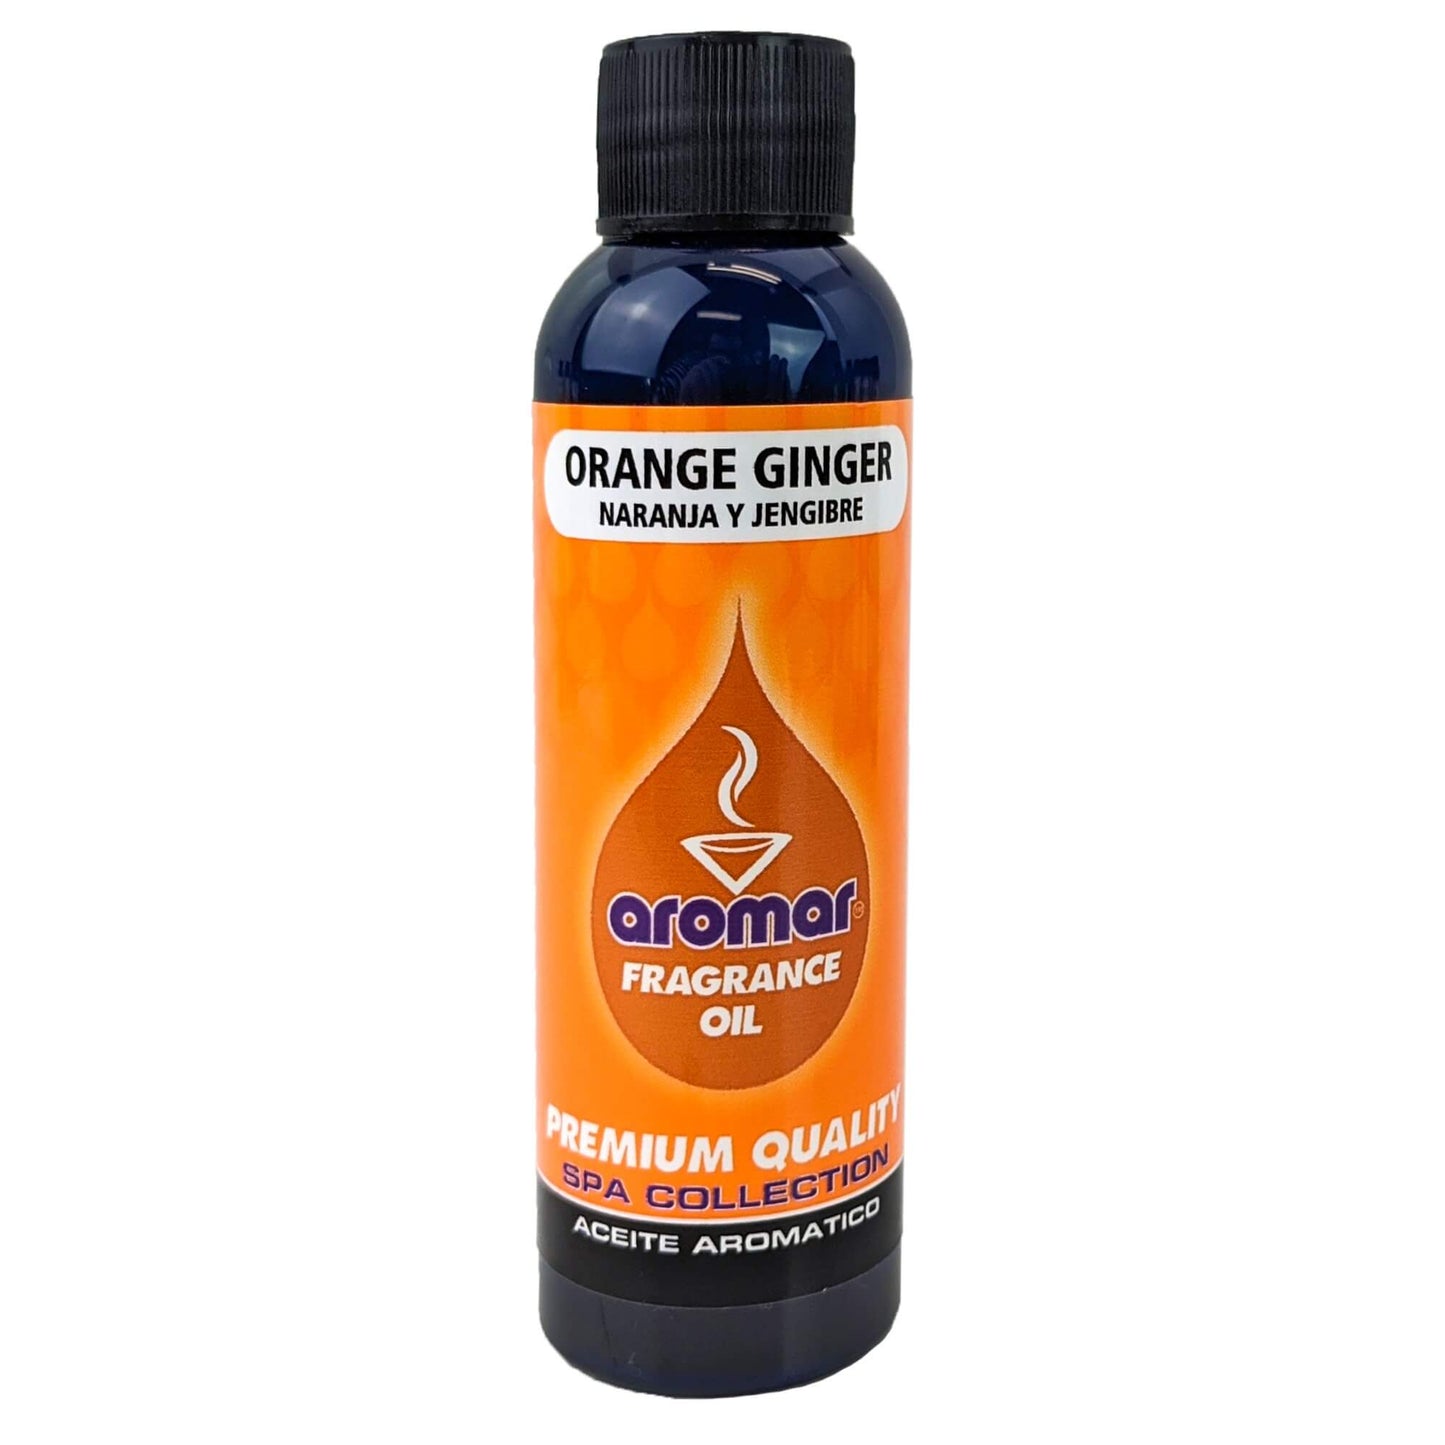 Orange Ginger Scent Aromar Fragrance Oil, 2oz/60ml